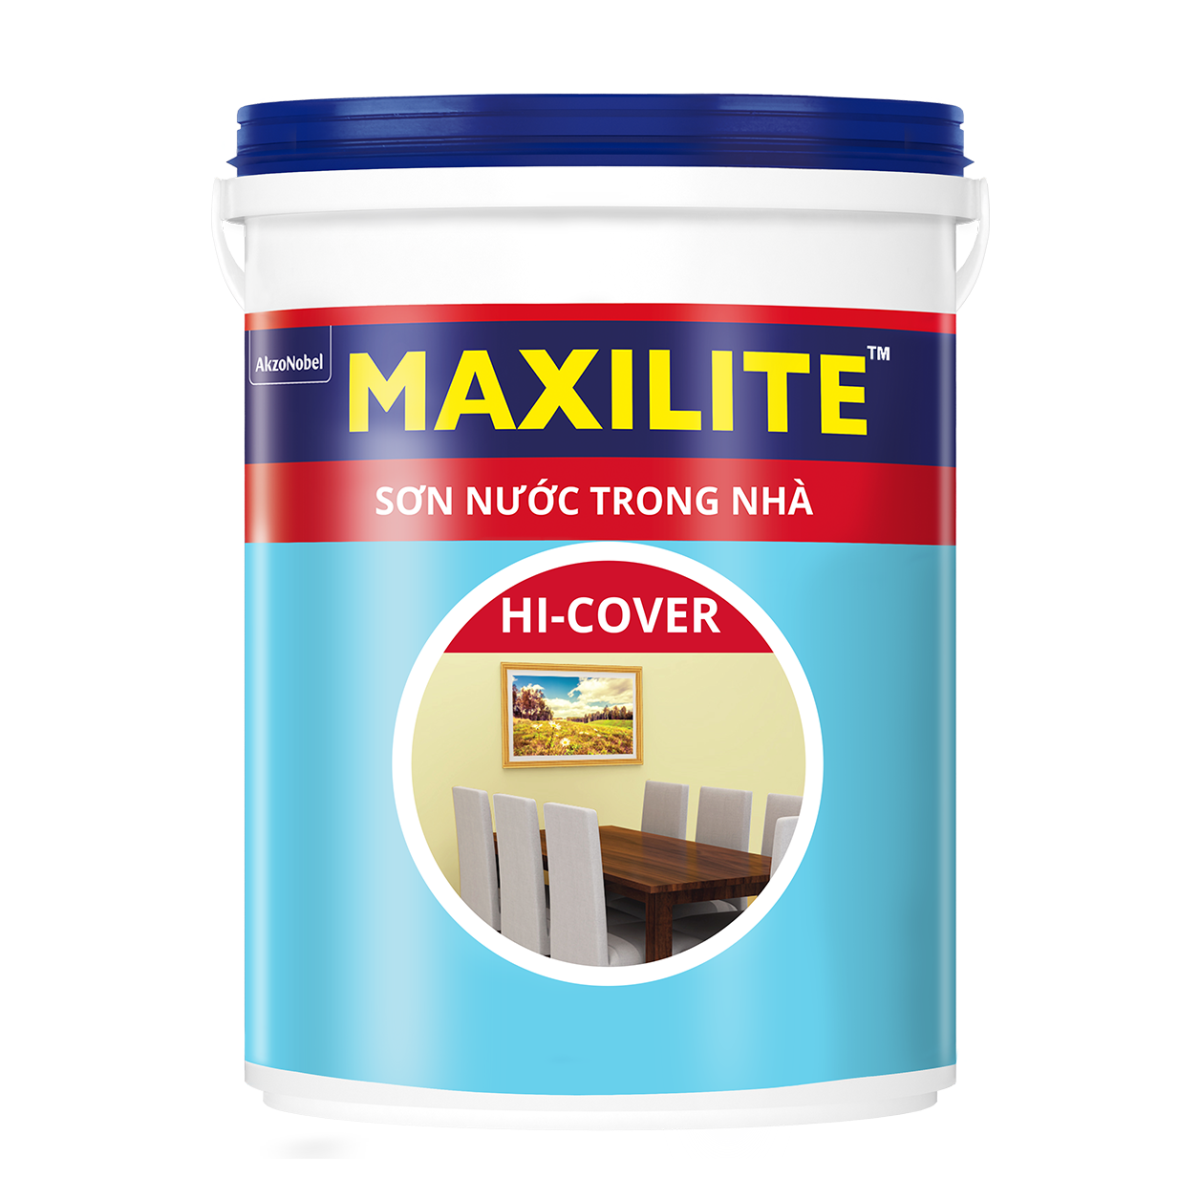 Sơn Nước Trong Nhà Maxilite Hi-Cover